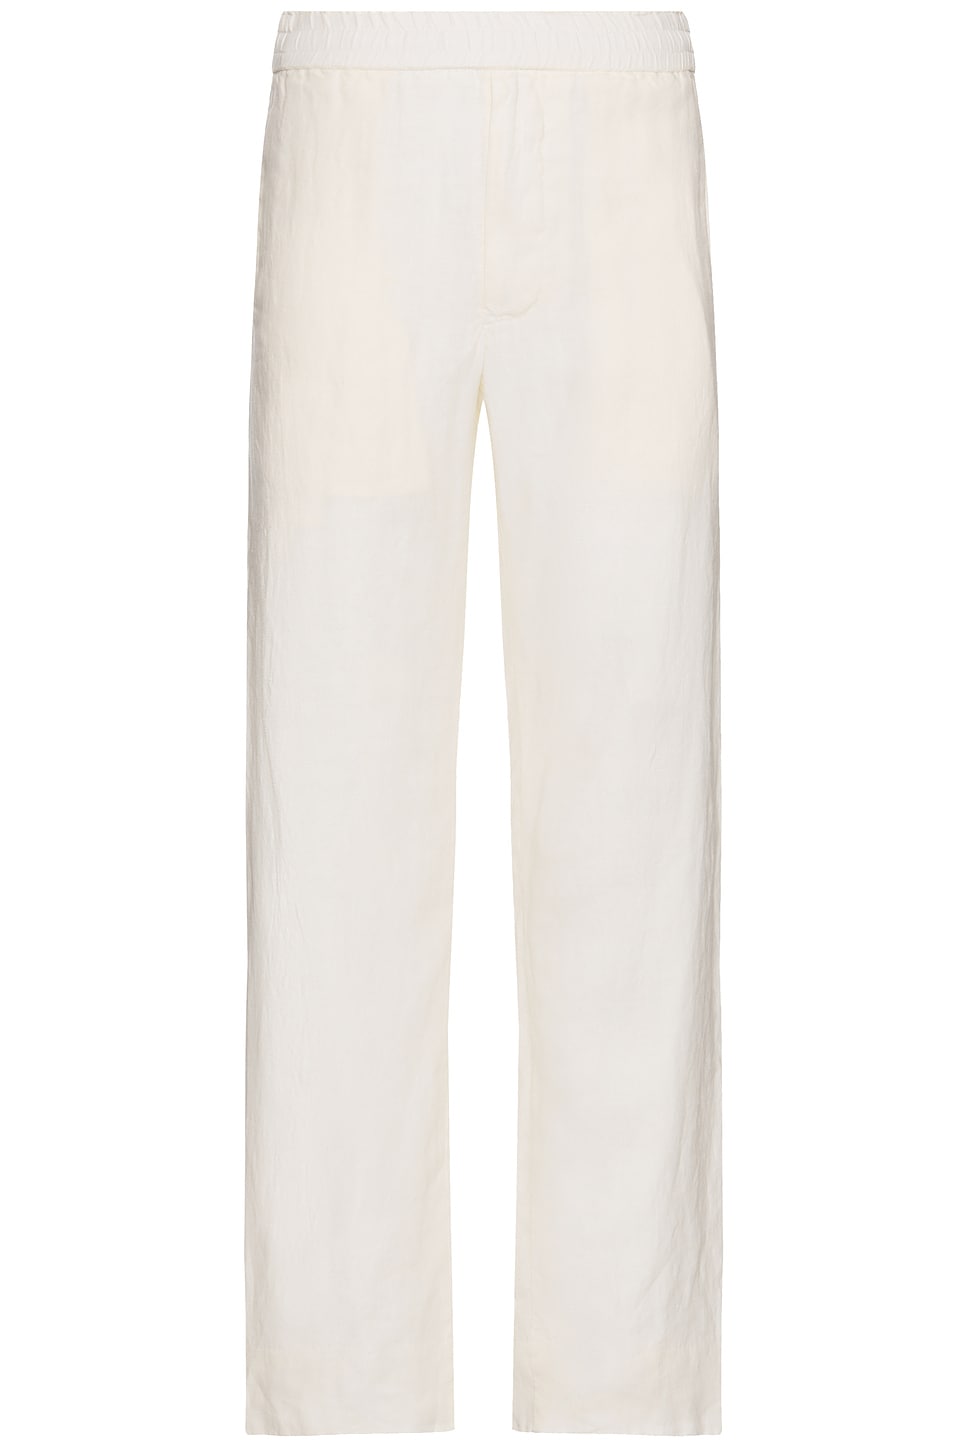 Linen Easy Trouser in White